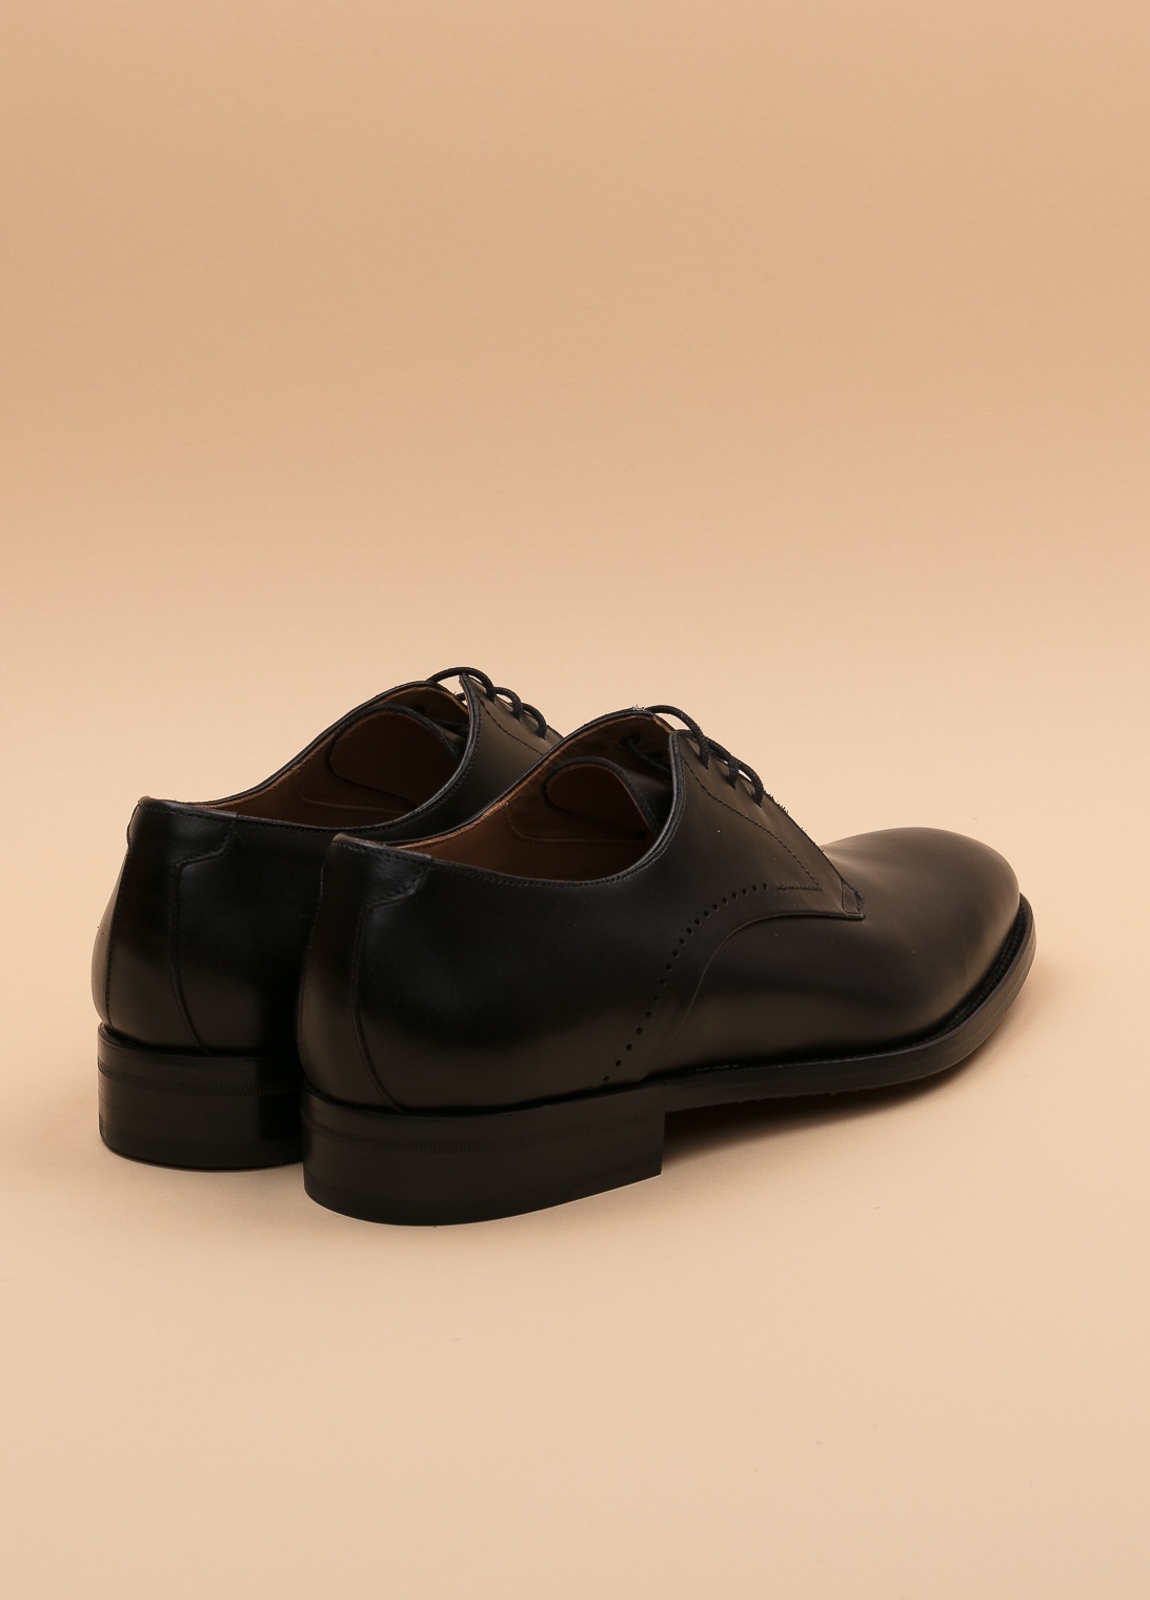 Zapato Formal Wear FUREST COLECCIÓN negro - Ítem4